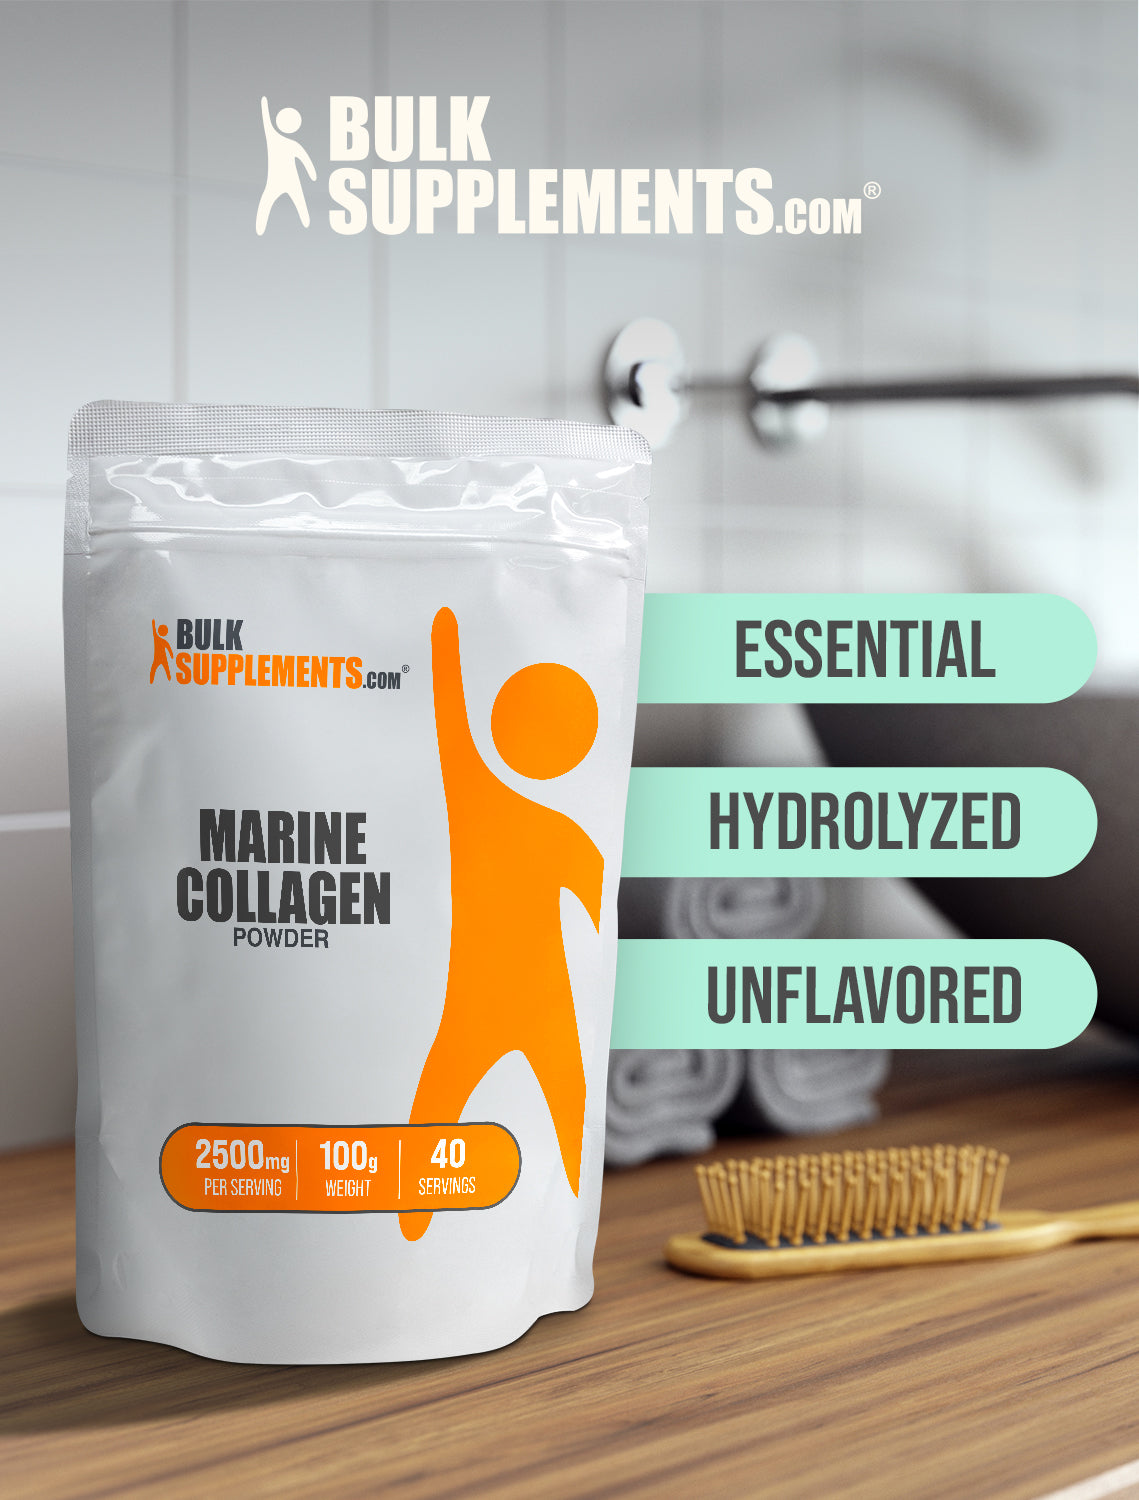 Marine collagen powder 100g keywords image